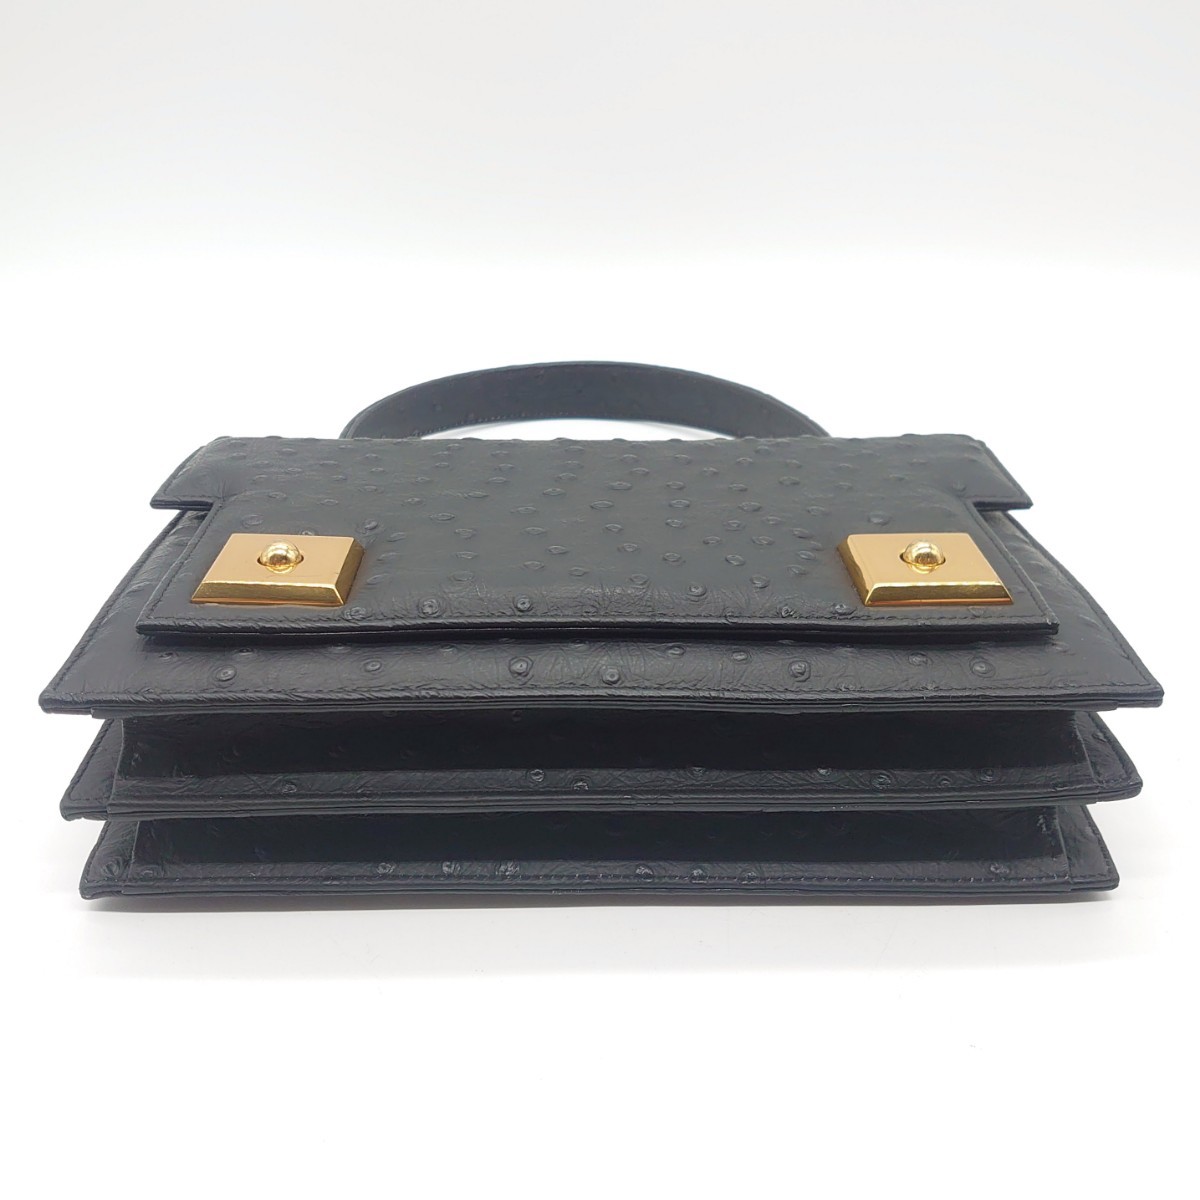  Ostrich женский ручная сумочка No-brand экзотический кожа карман металлические принадлежности Gold черный retro подлинная вещь dn-23x1025